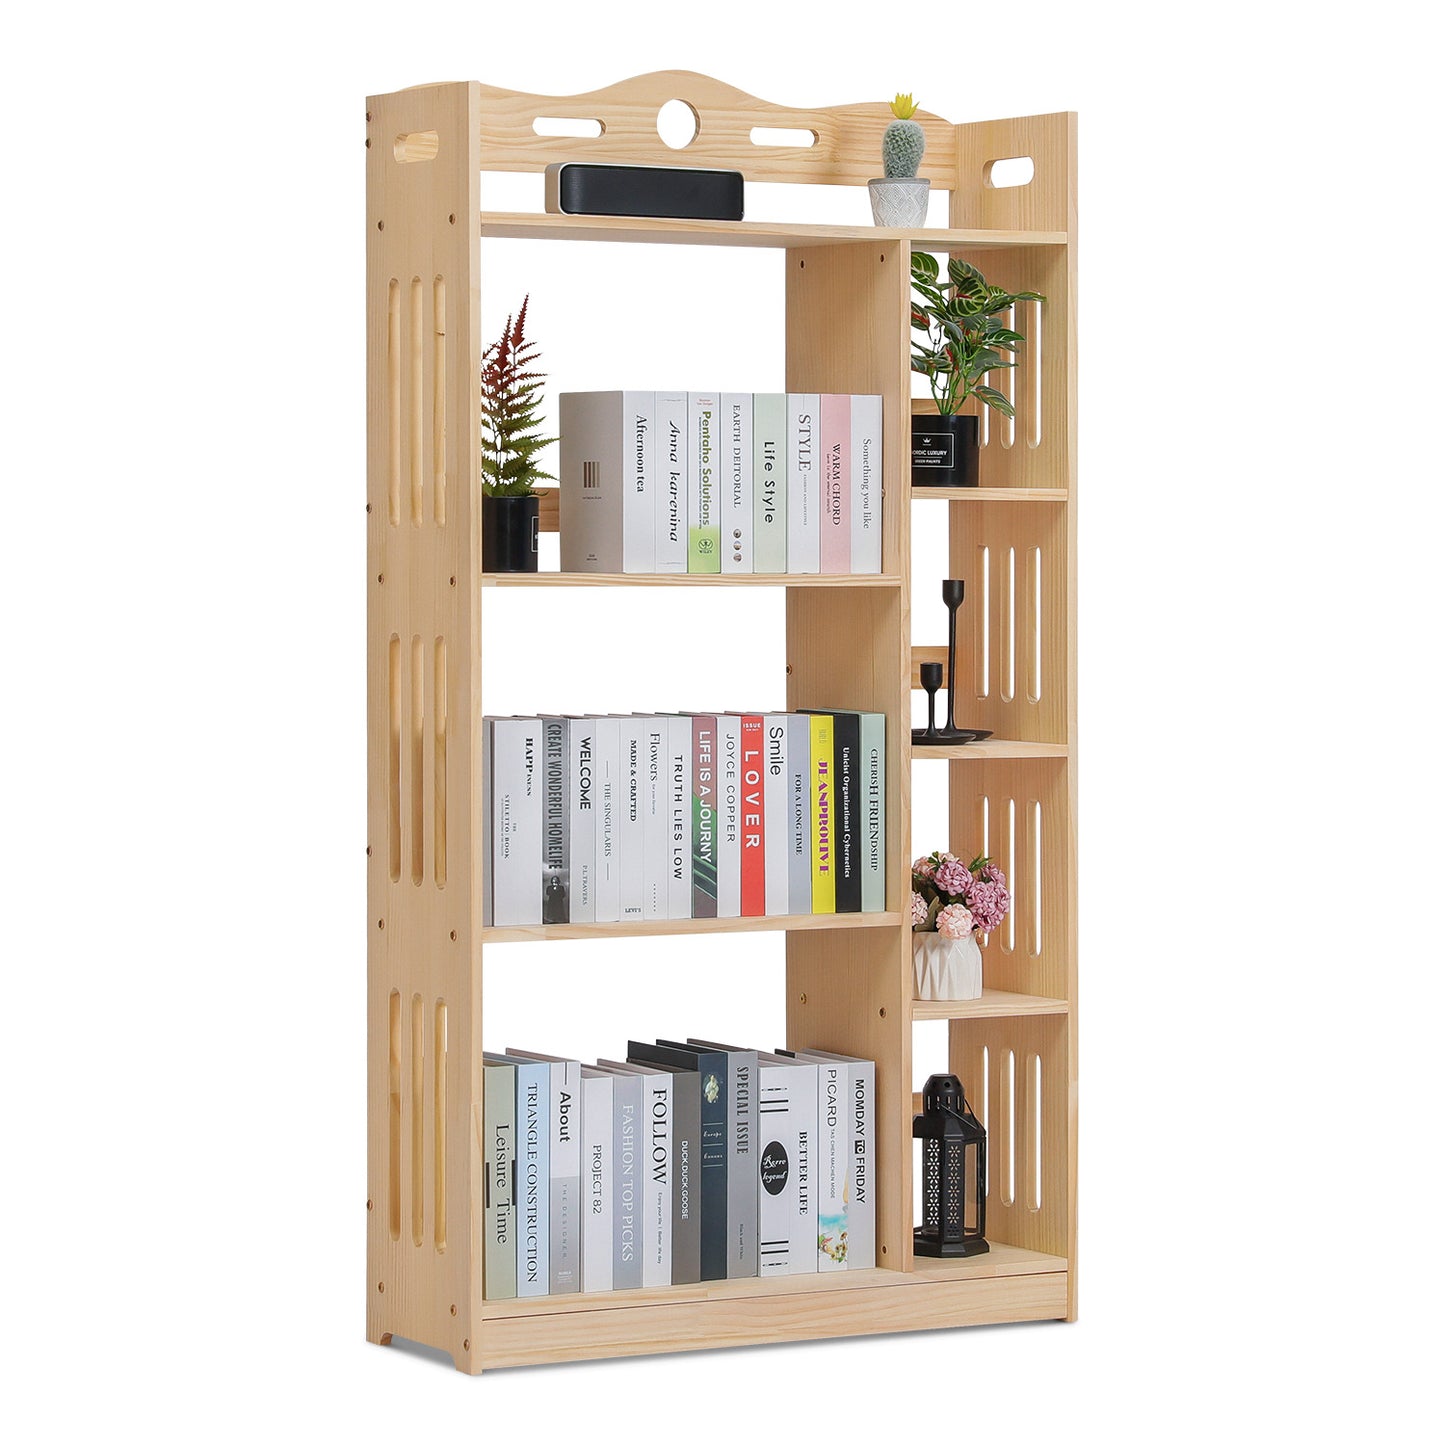 Wooden Display Storage Organizer - 5 Tier - 33" - Natural